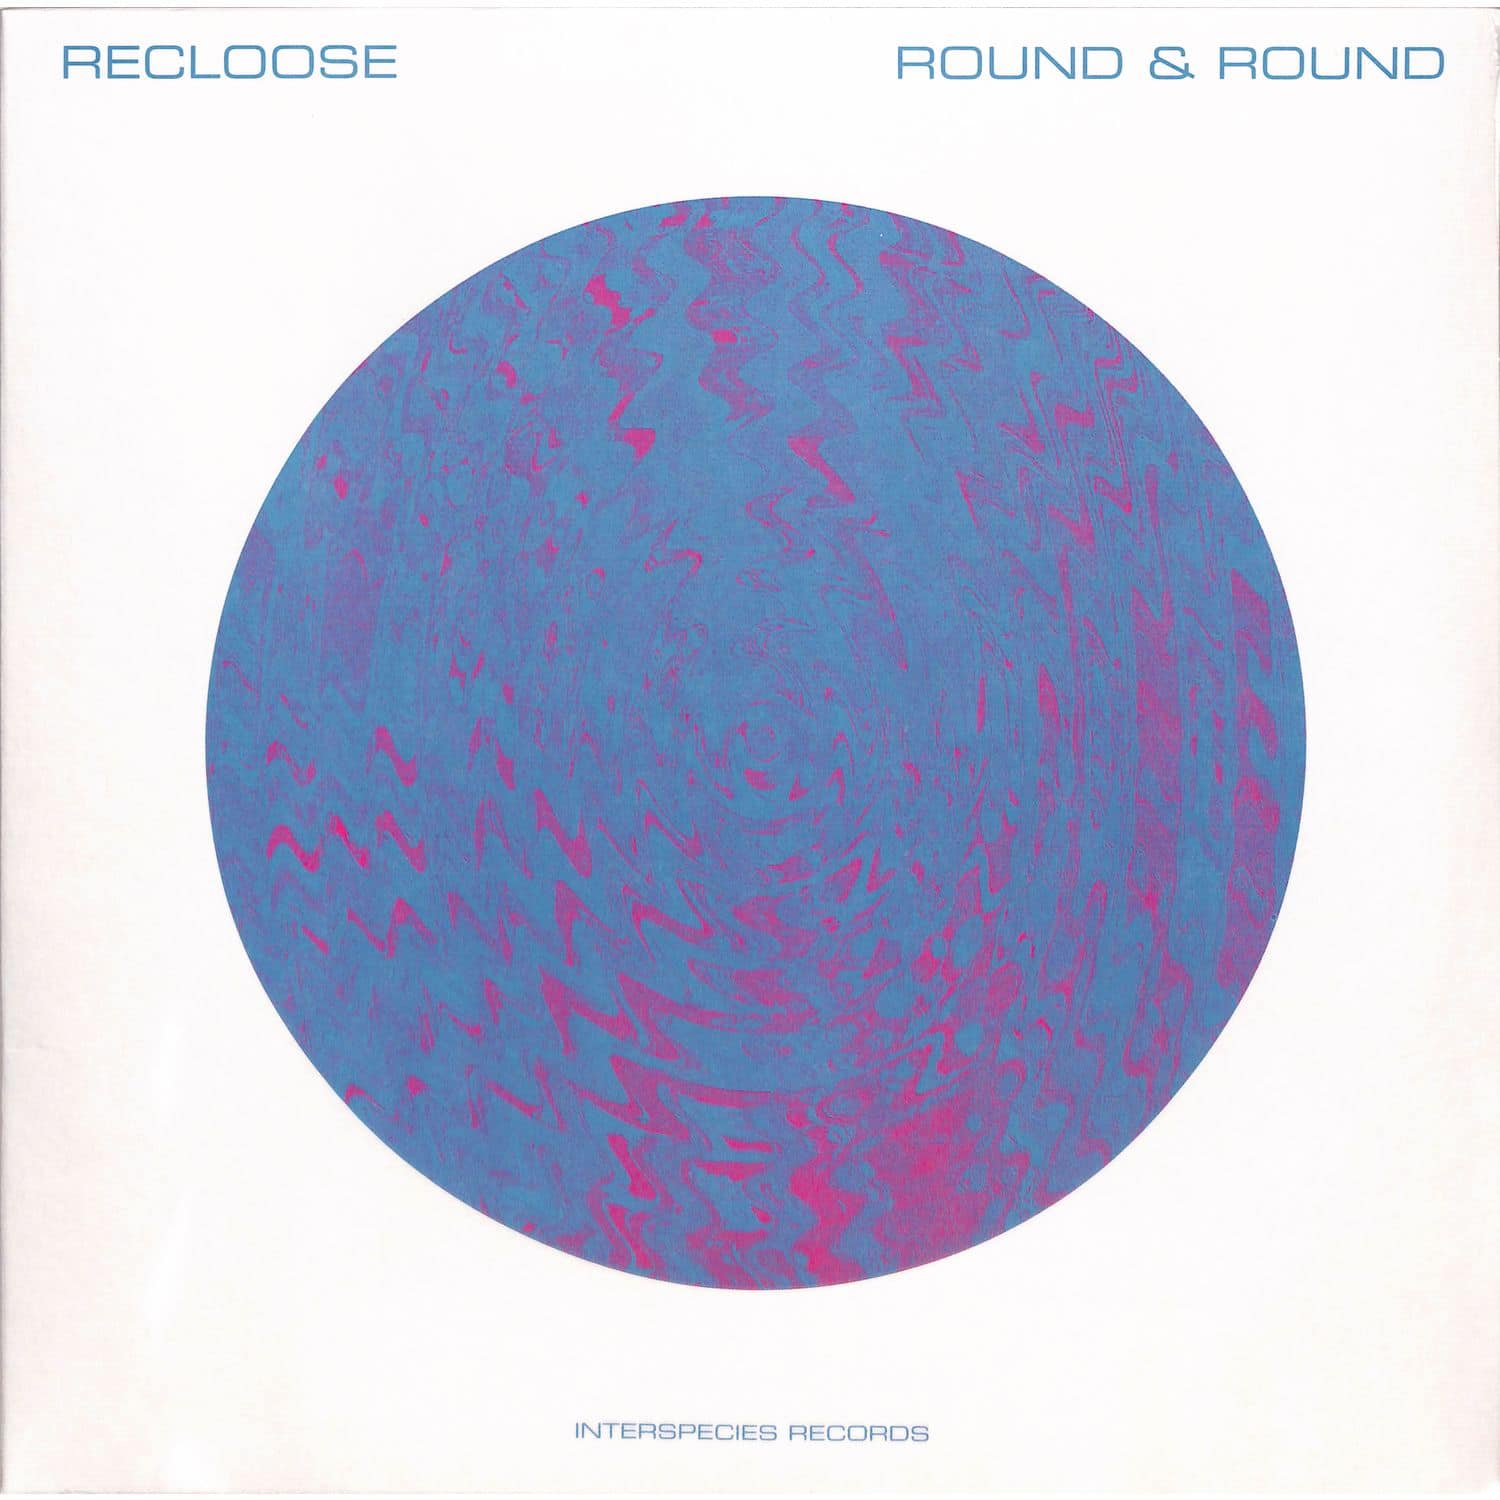 Recloose - ROUND & ROUND